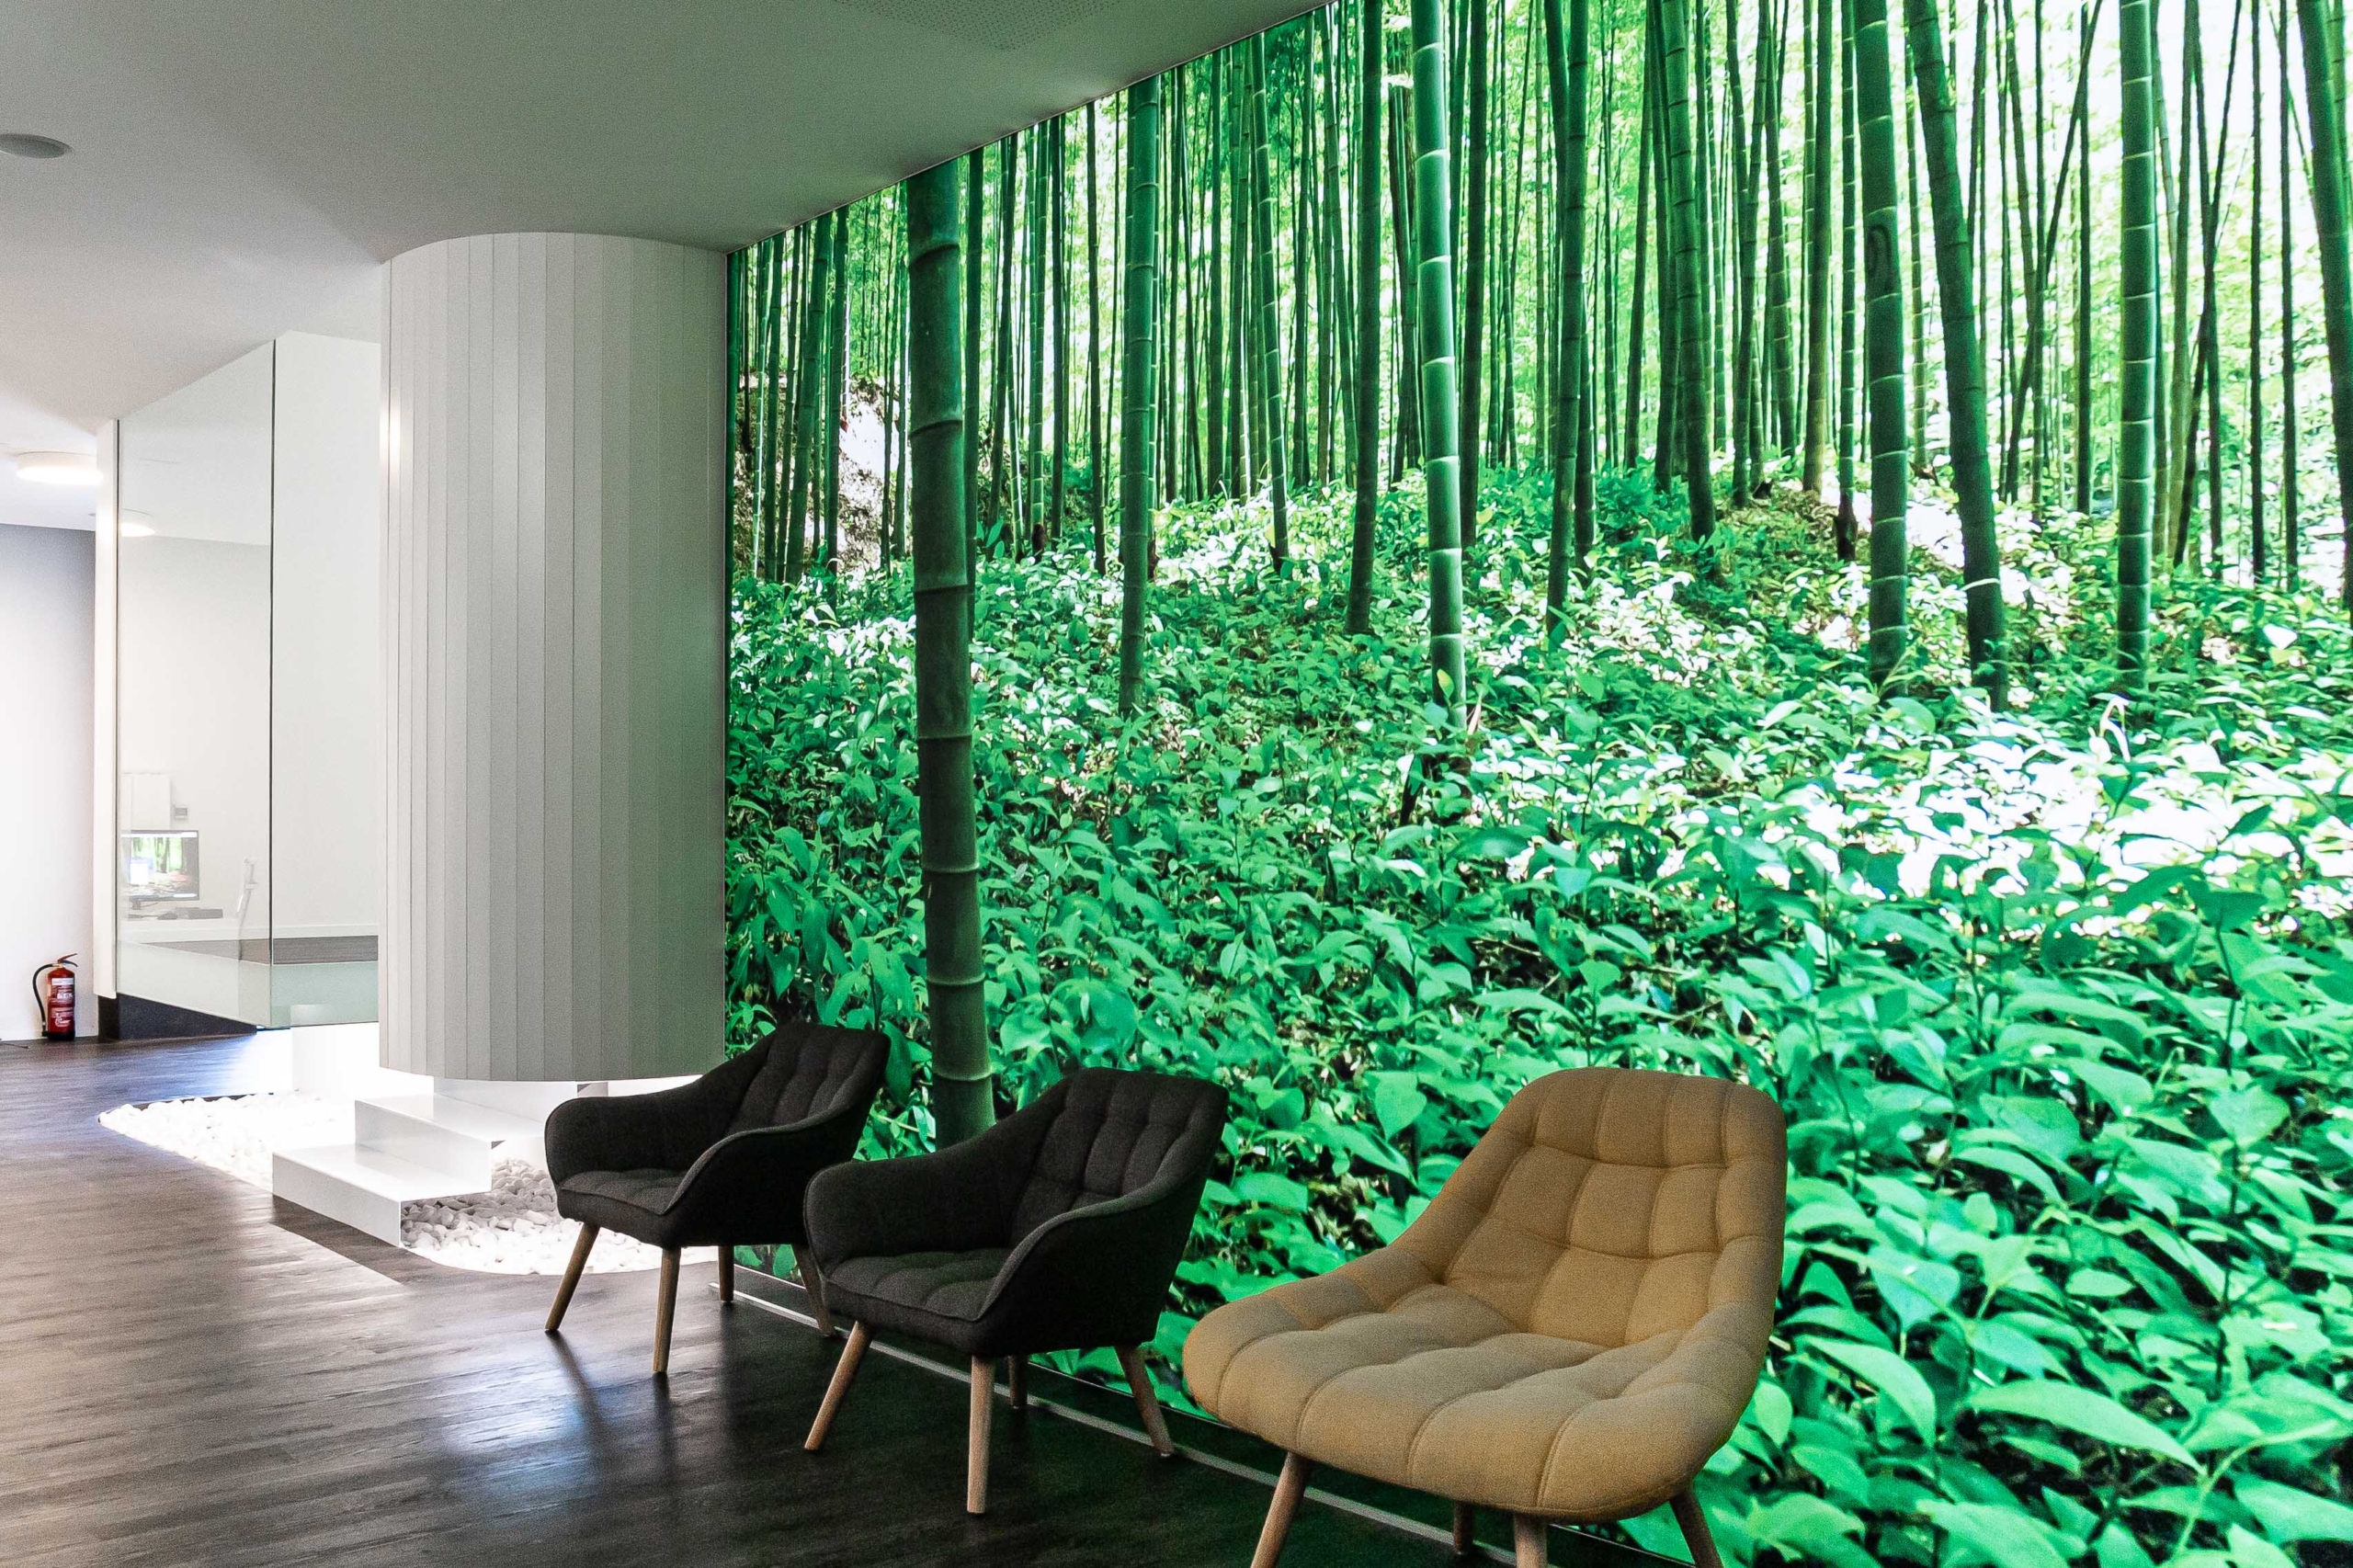 Sala de recepcion con pantallon enorme de bamboo y sillas con acabdo moderno